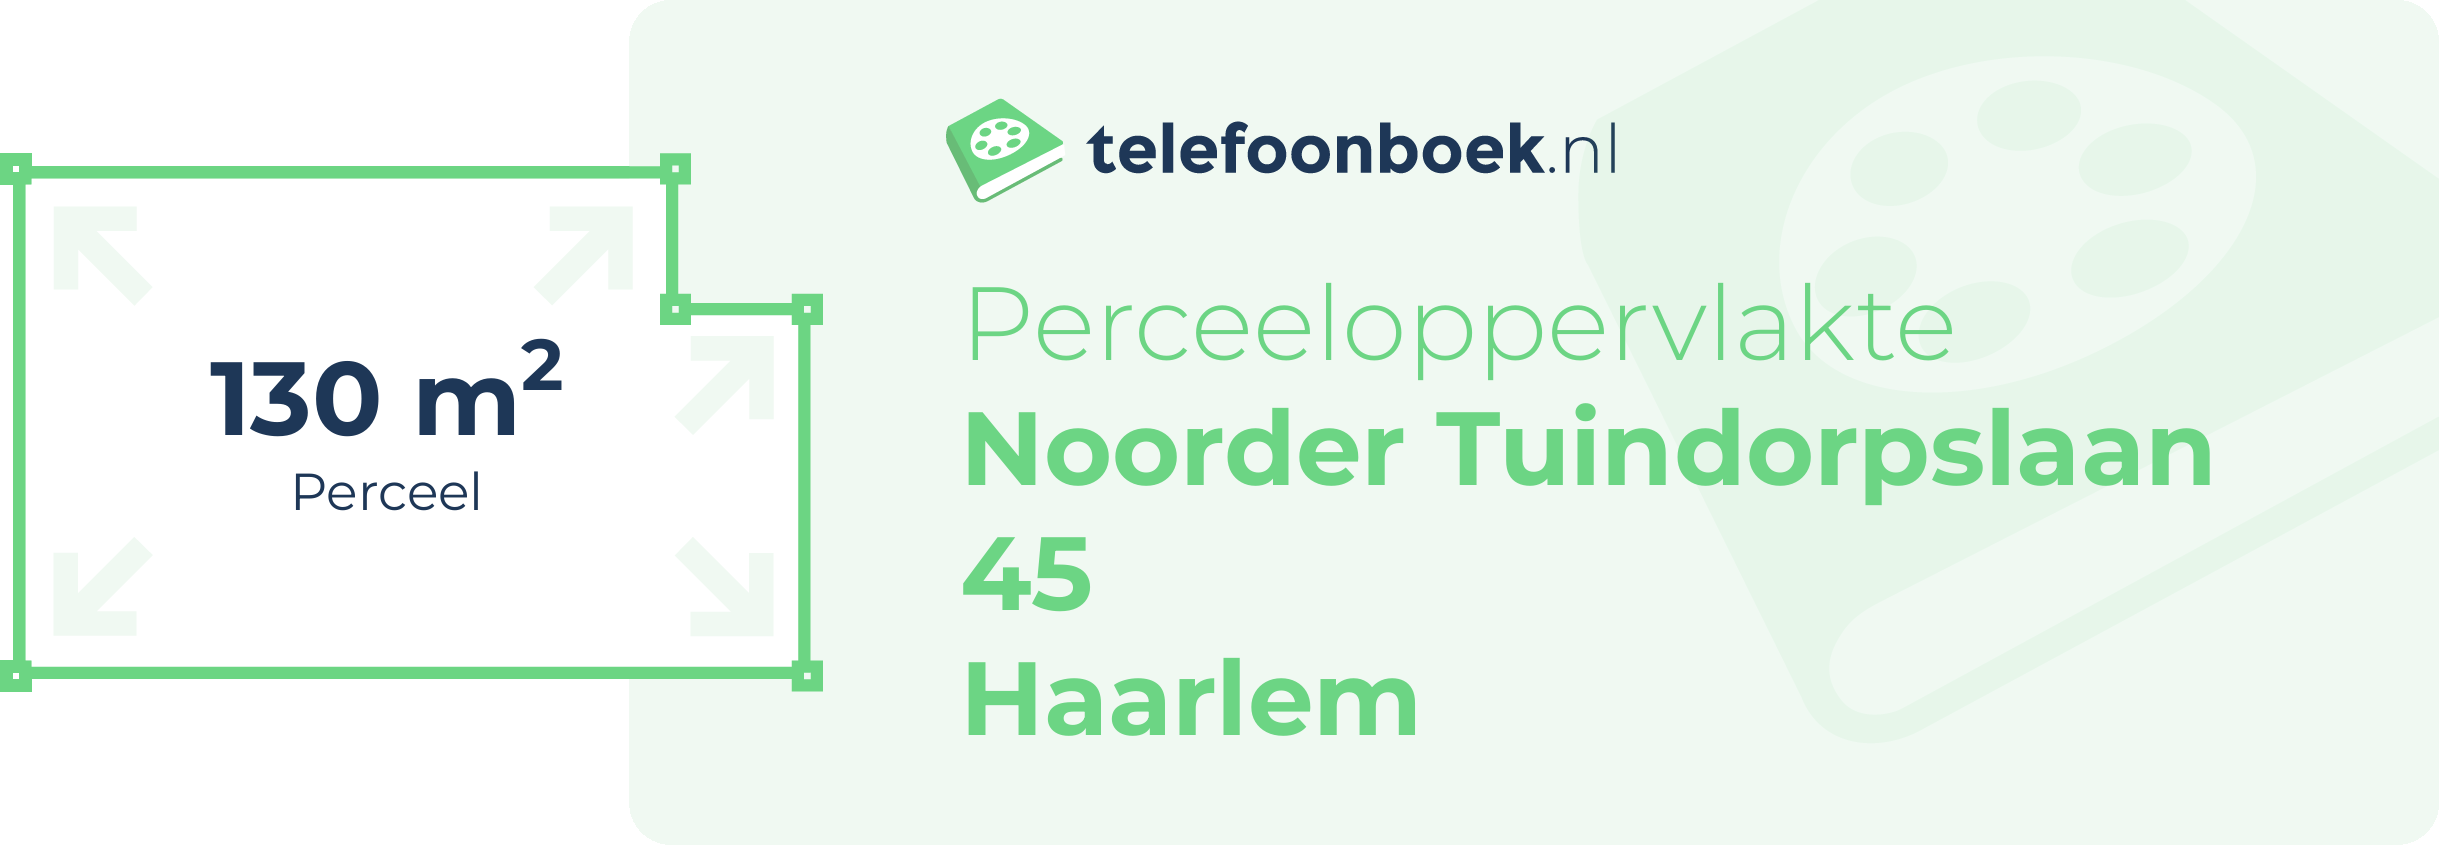 Perceeloppervlakte Noorder Tuindorpslaan 45 Haarlem